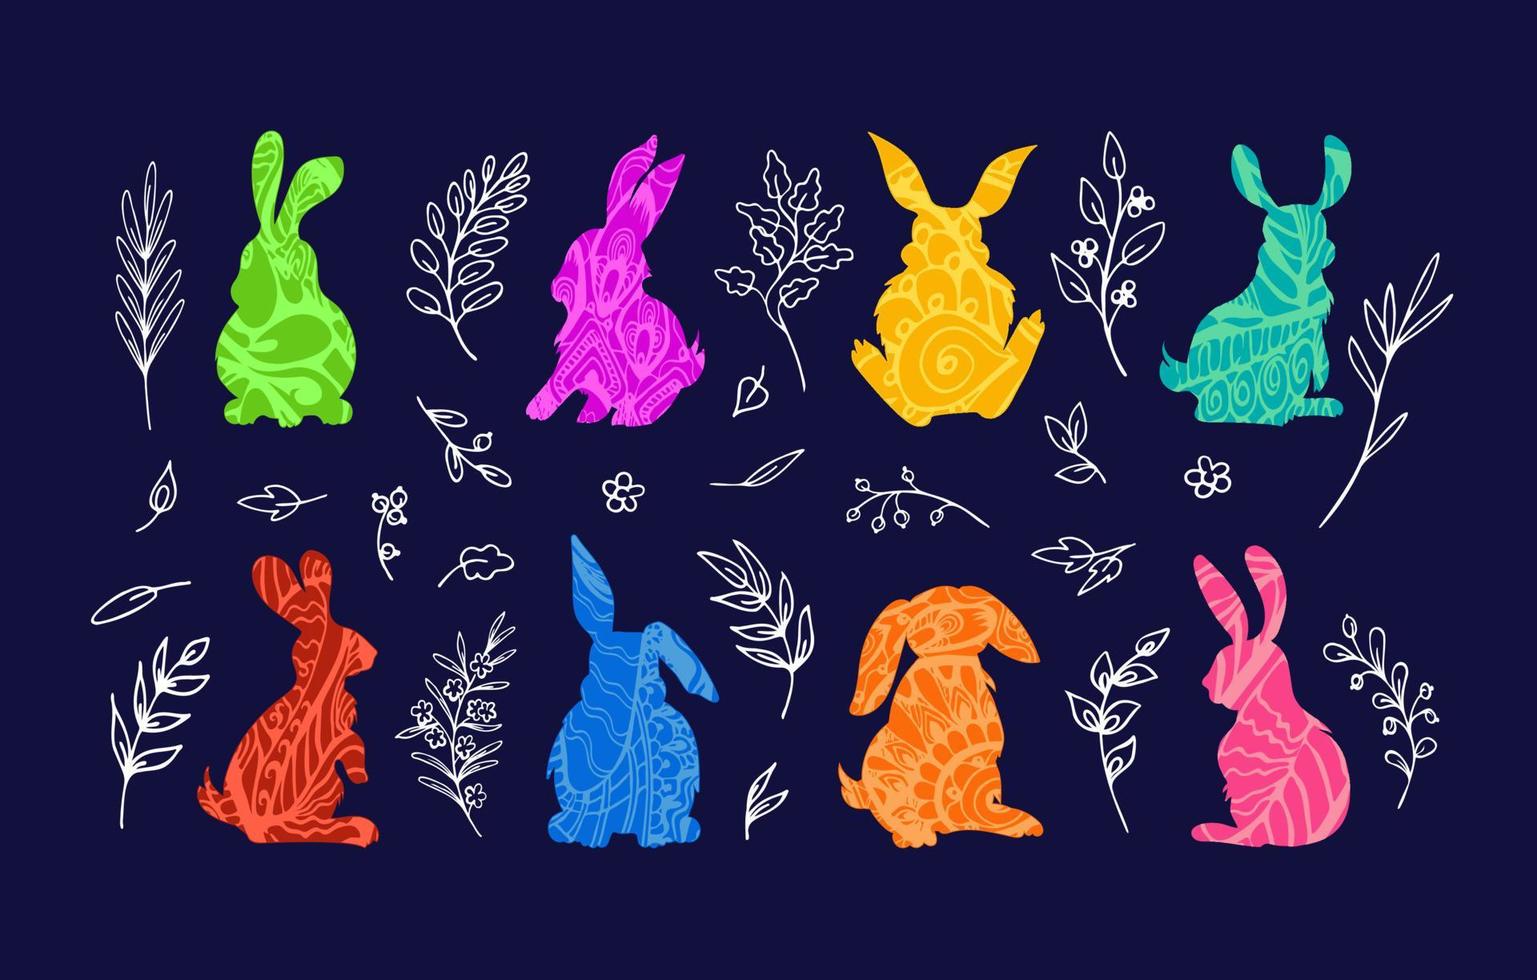 Pasen konijntjes in divers zittend poseert, kleurrijk hand- getrokken silhouetten met etnisch boho wirwar patronen, wit contouren van fantasie kruiden Aan donker achtergrond. artistiek symbool verzameling voor prints vector